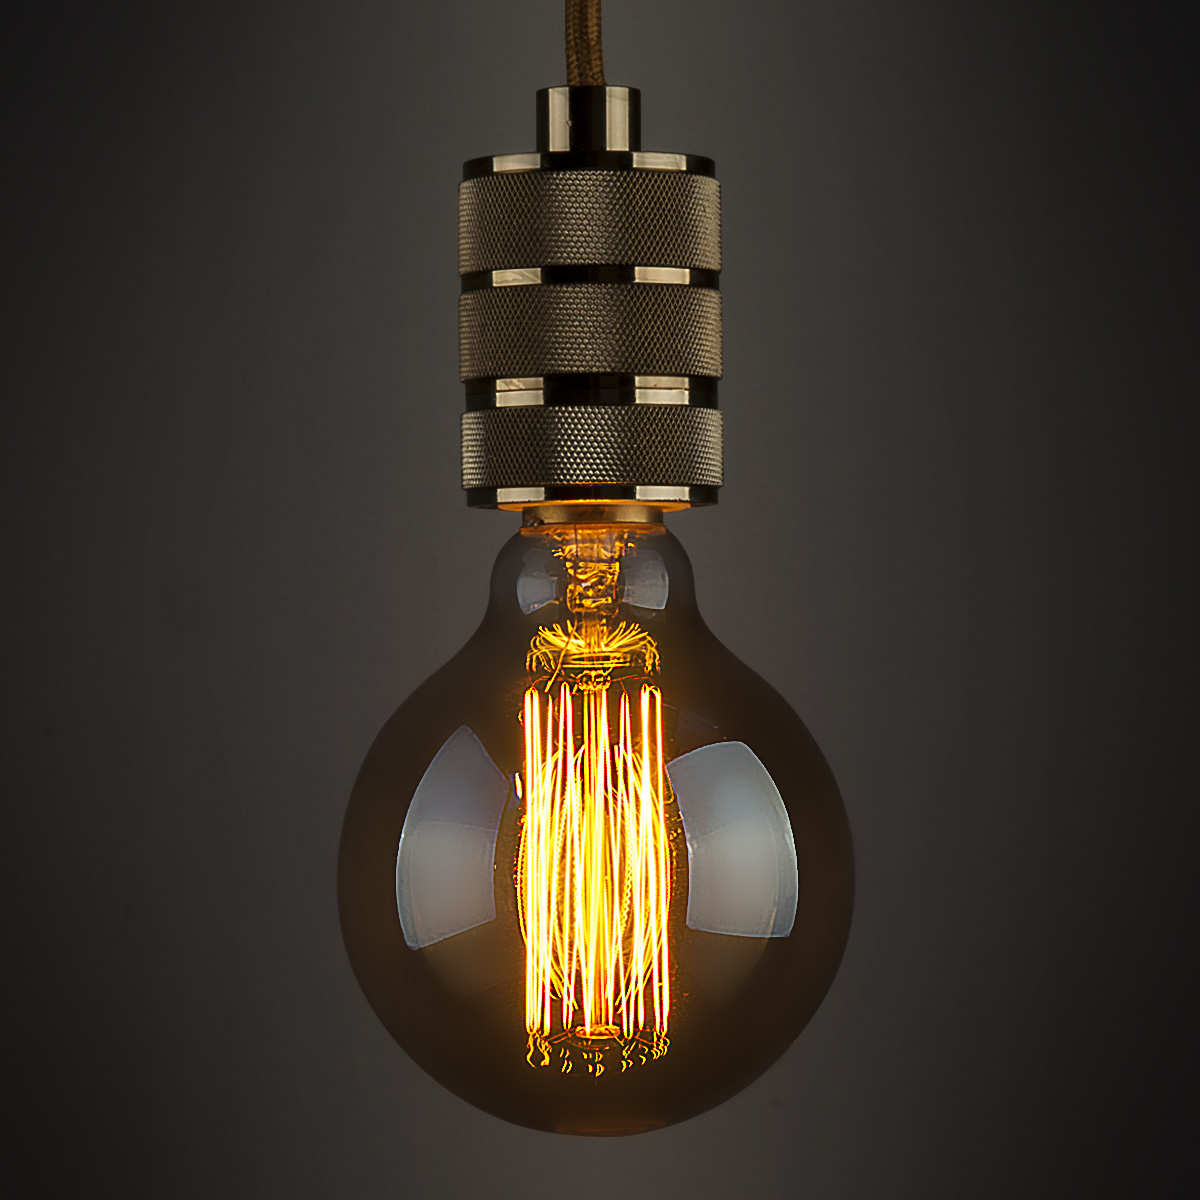 Лампа накаливания Elektrostandard диммируемая E27 60W прозрачная 4690389082160